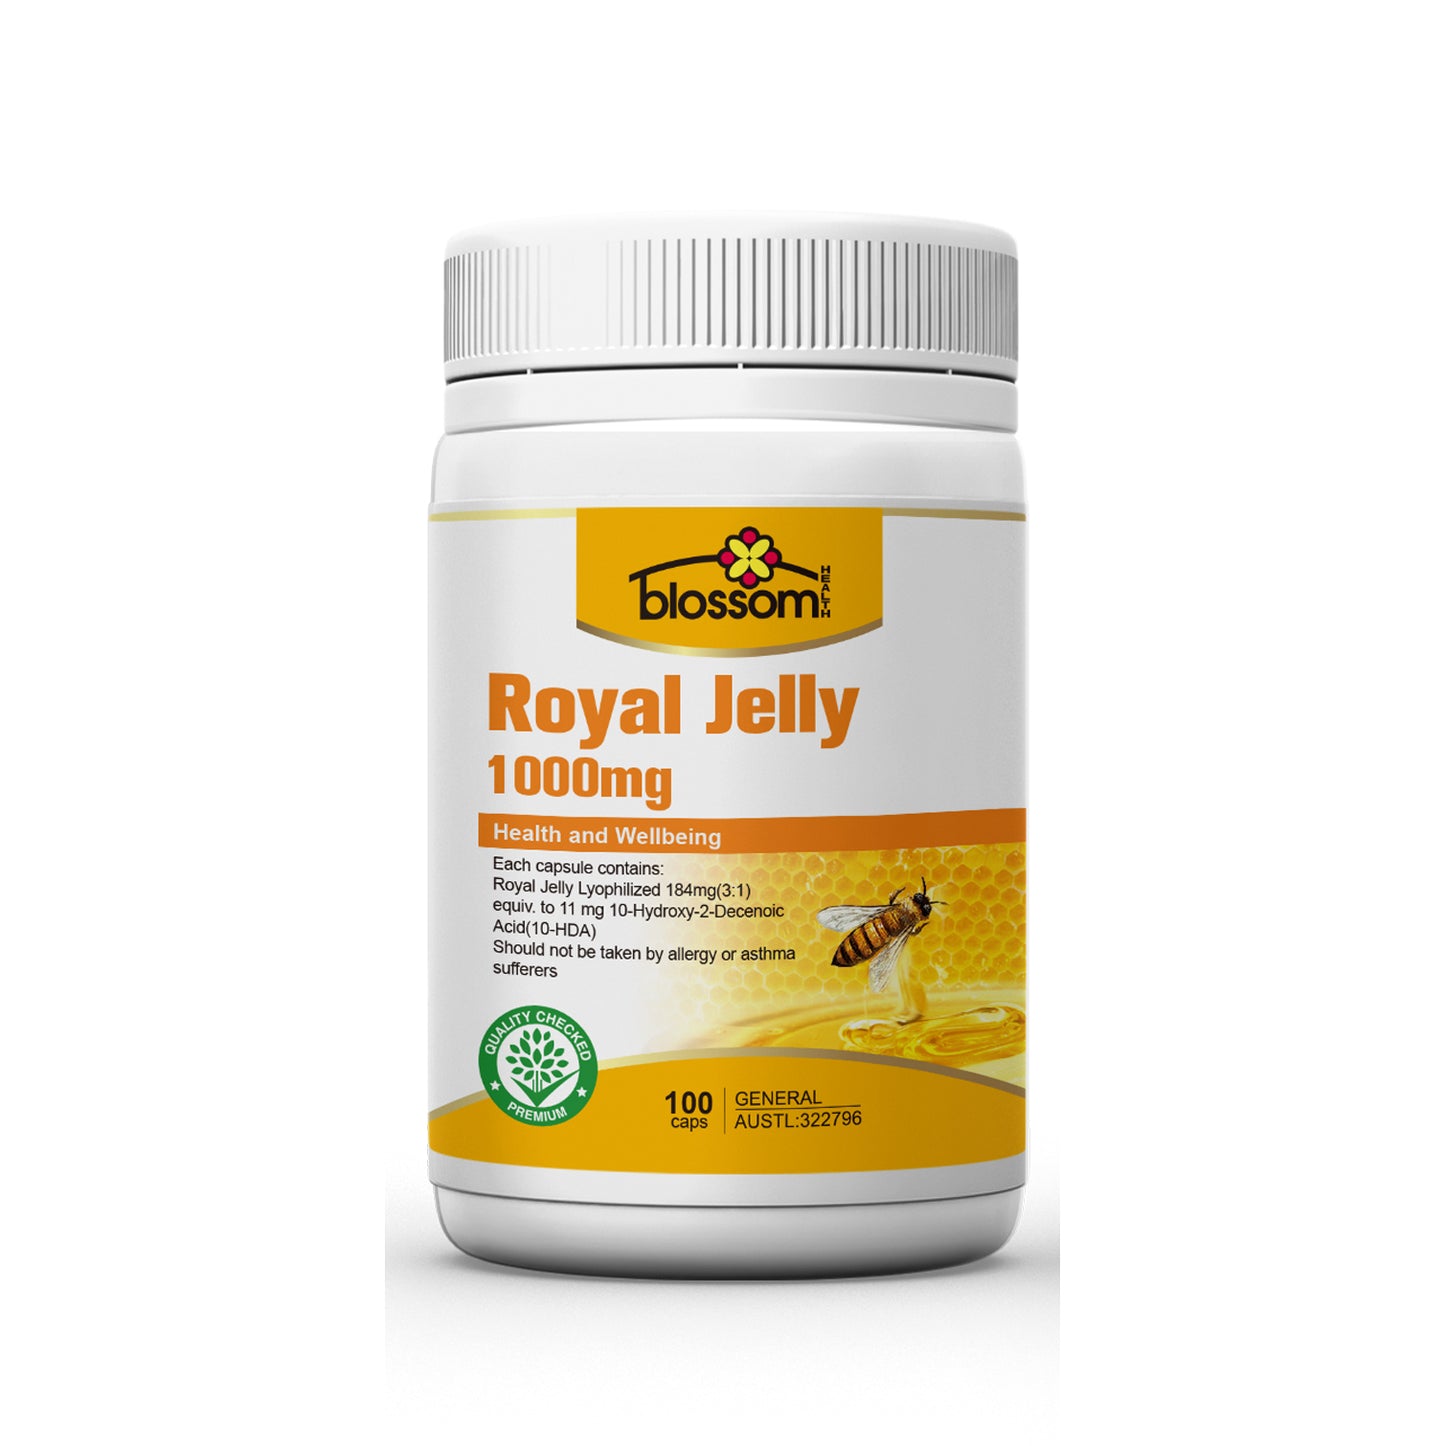 Royal Jelly 1000mg 10-HDA (expiry: 4/5/2023)